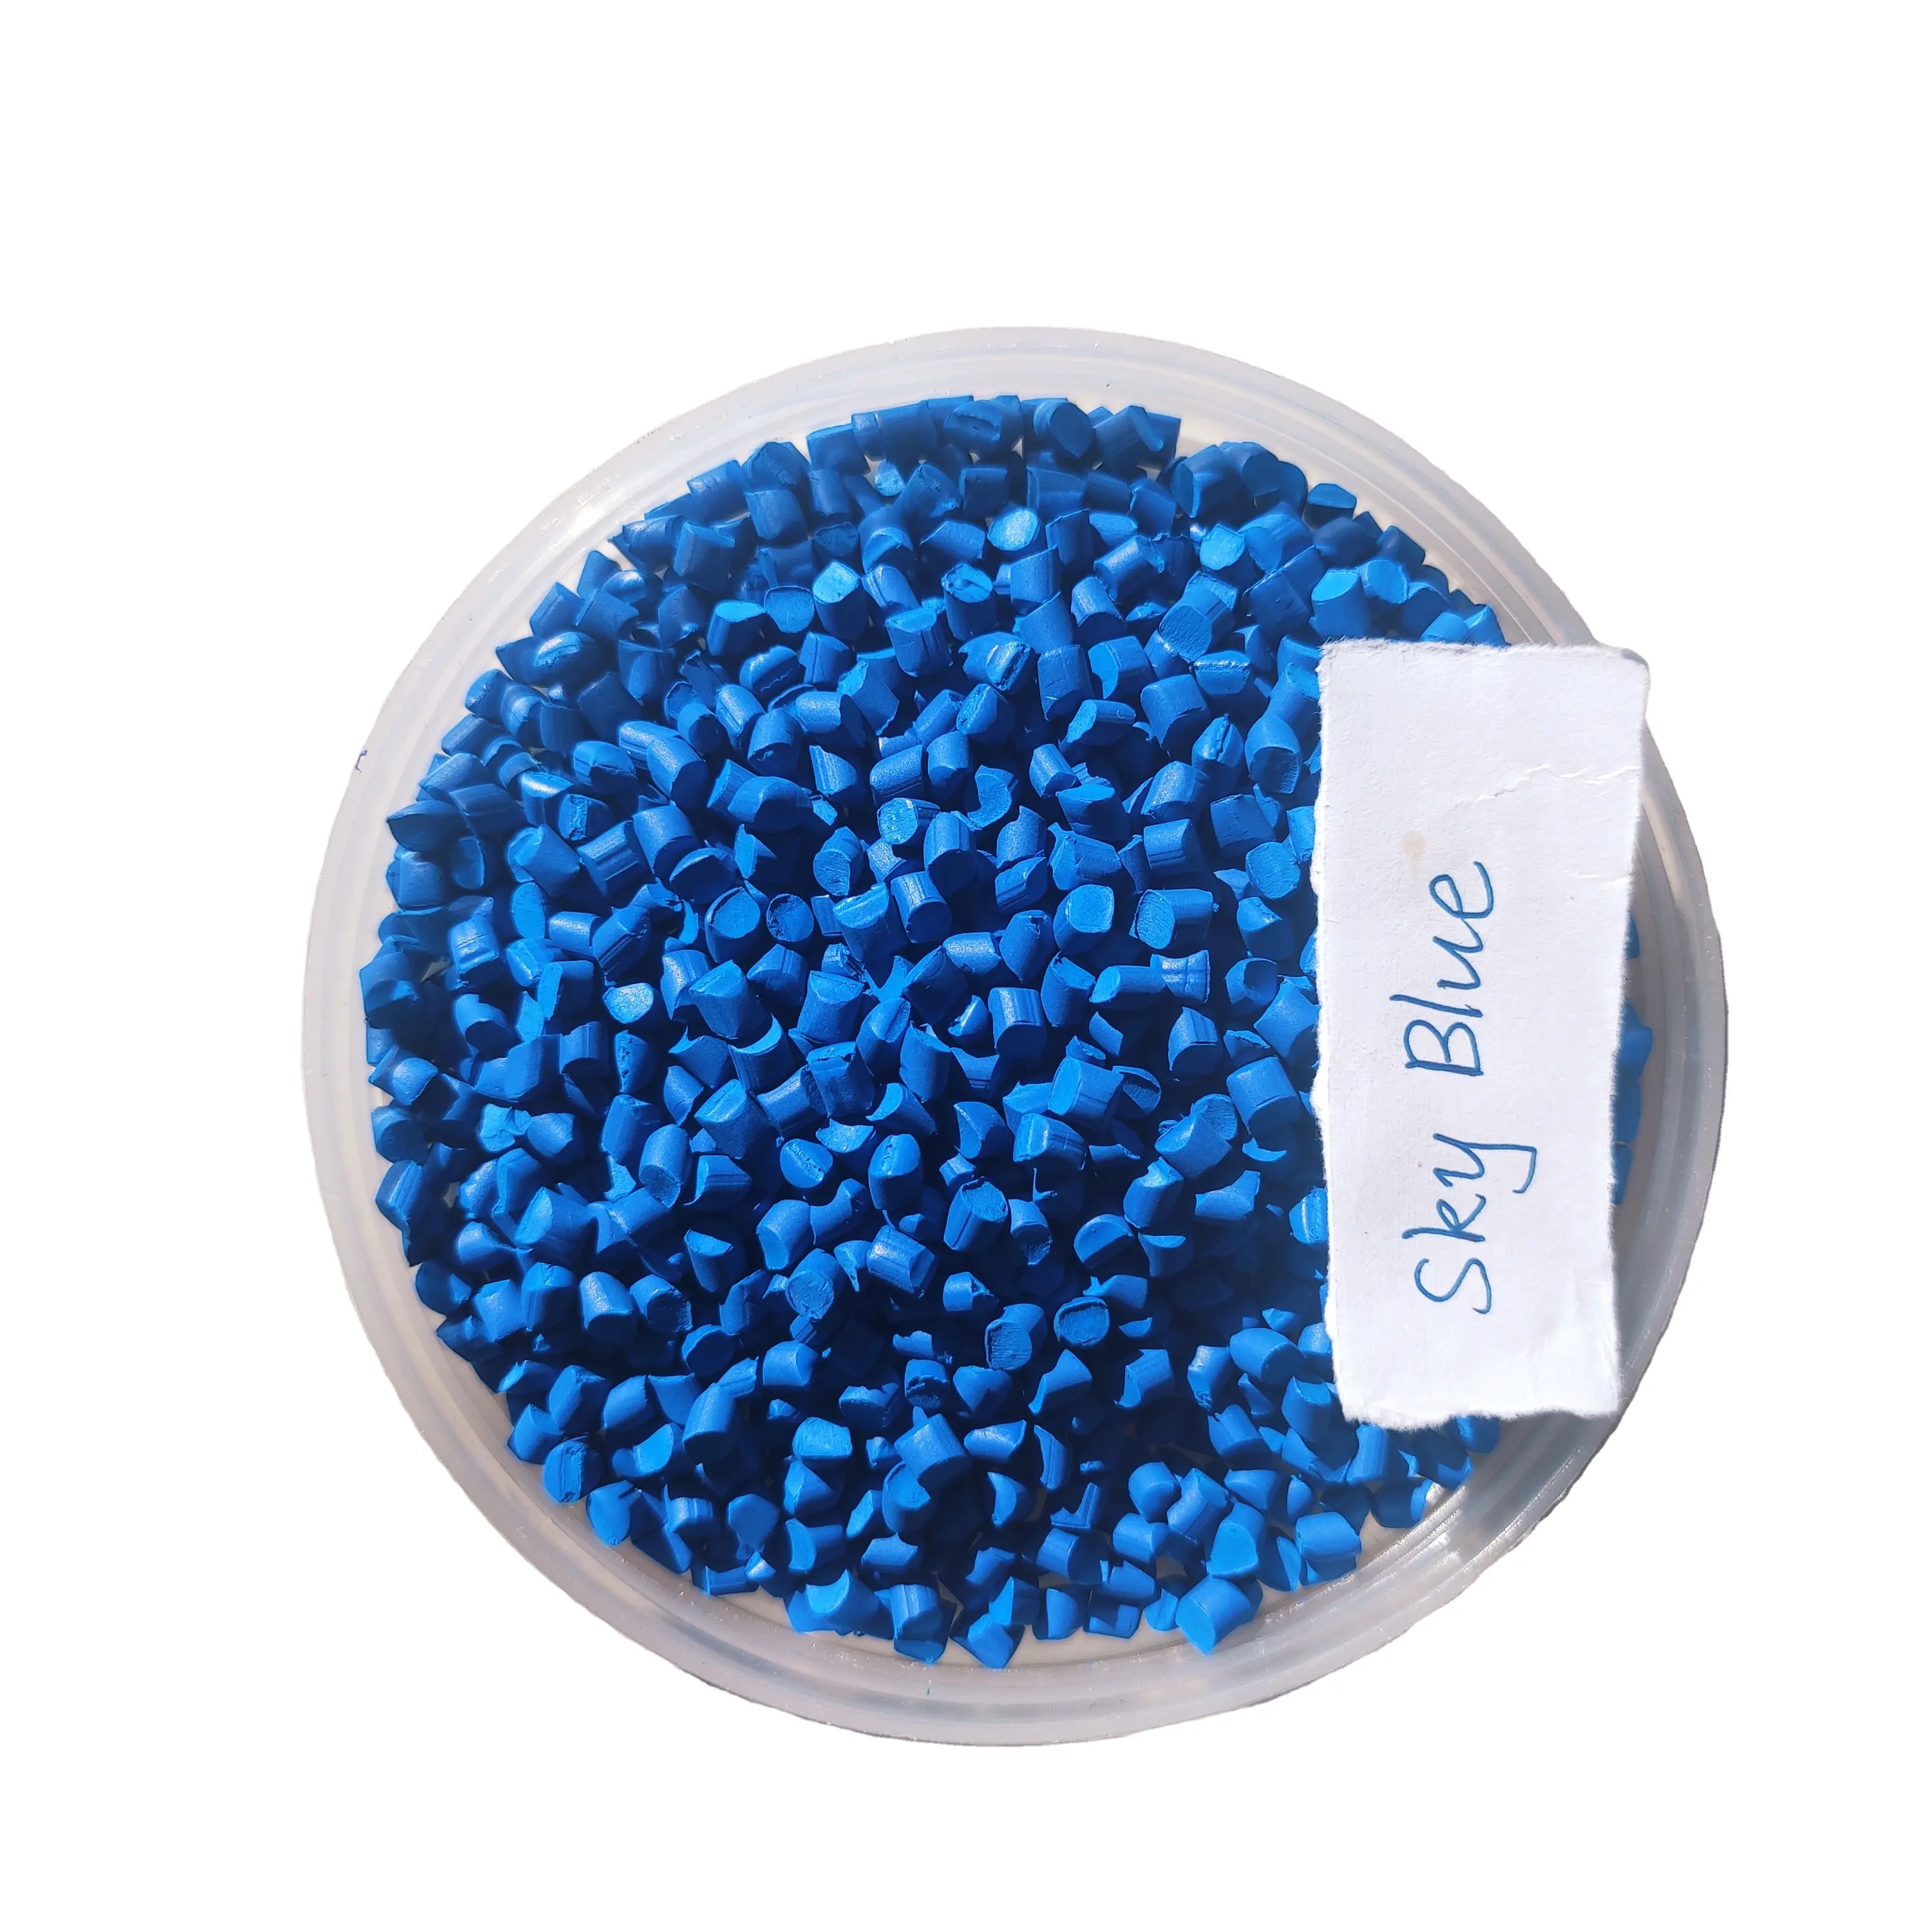 Lastic-Lote Maestro de alta pureza, fabricado en PP y PE, color azul cielo